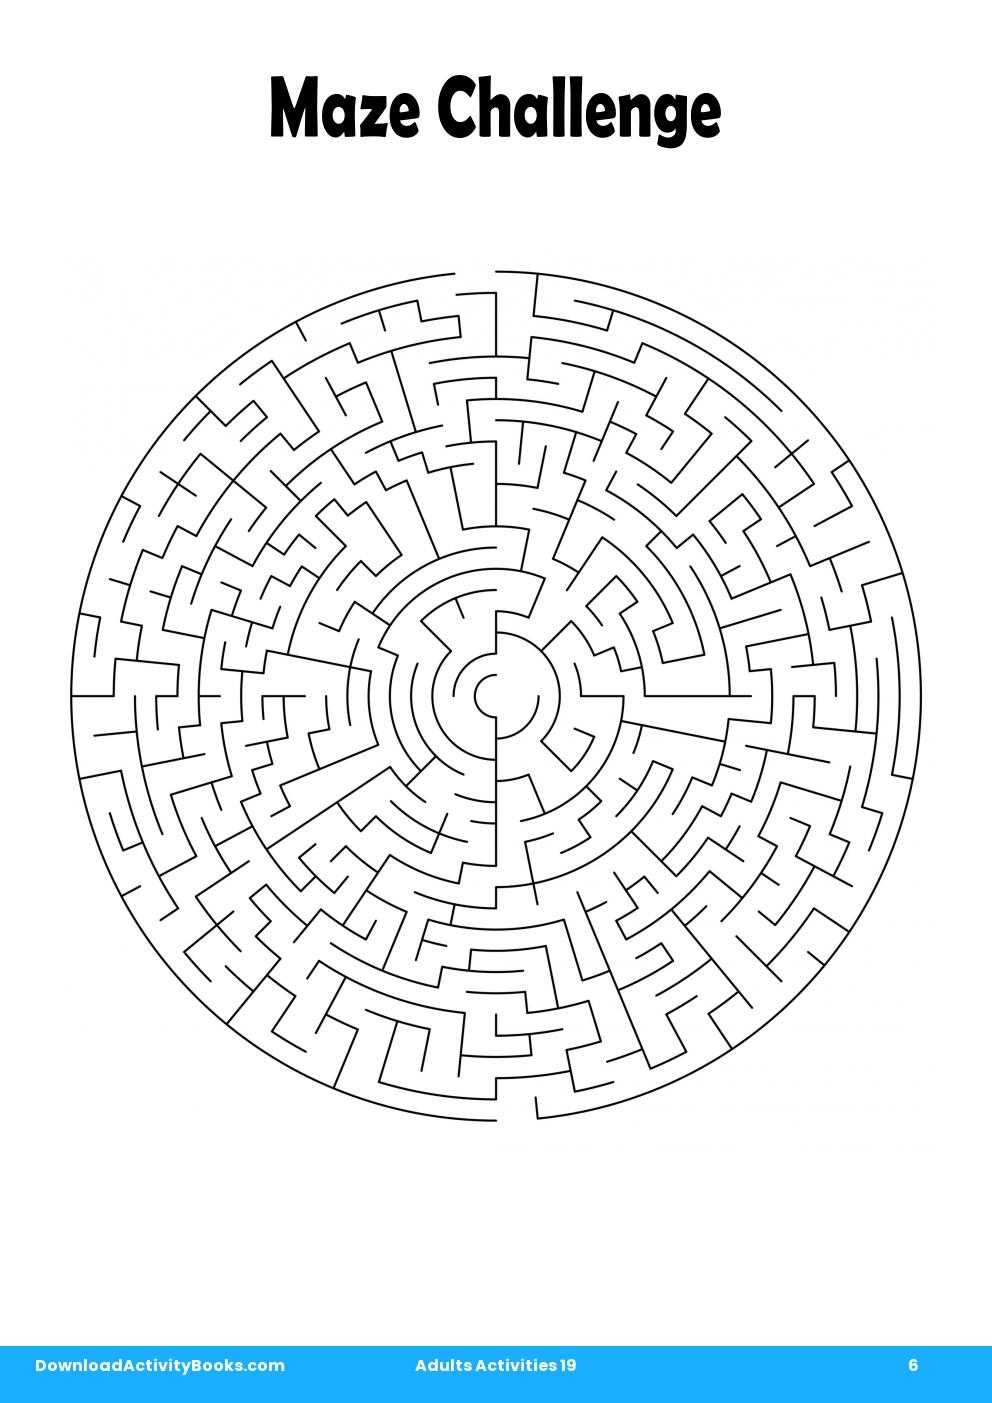 Maze Challenge in Adults Activities 19